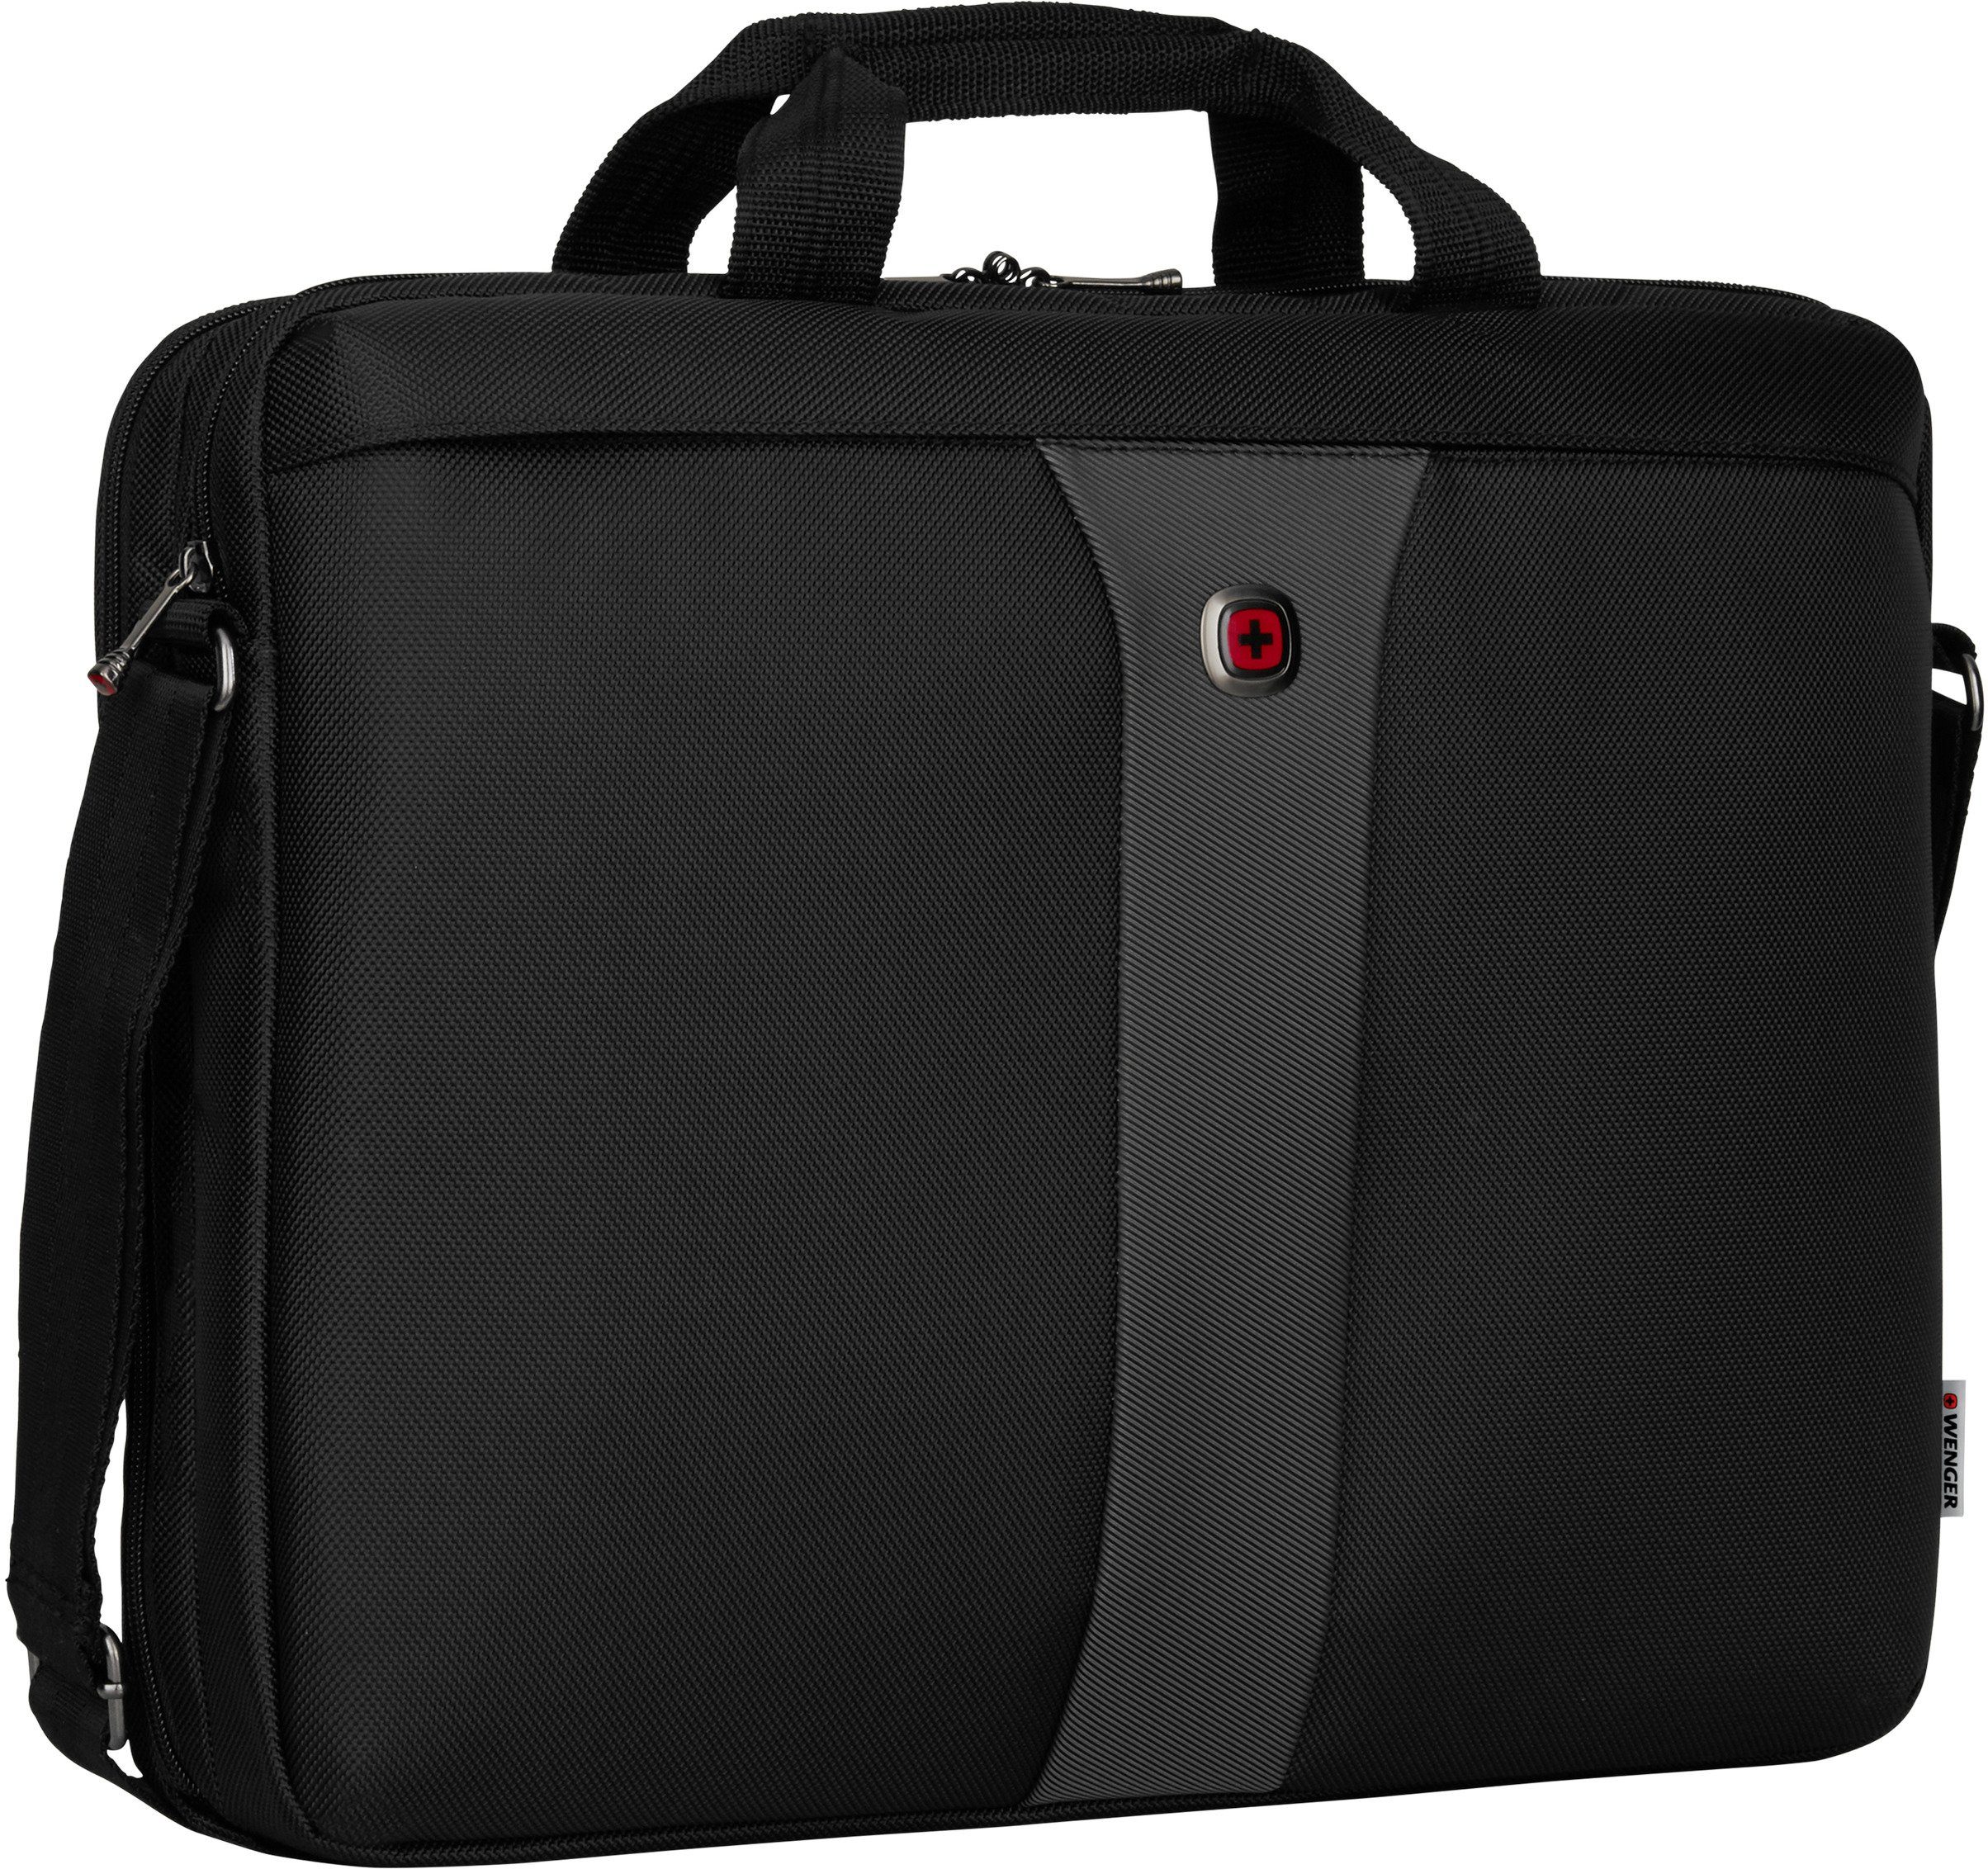 Schutzsystem mit Wenger Legacy, 17-Zoll Laptoptasche und ShockGuard Laptopfach schwarz/grau,